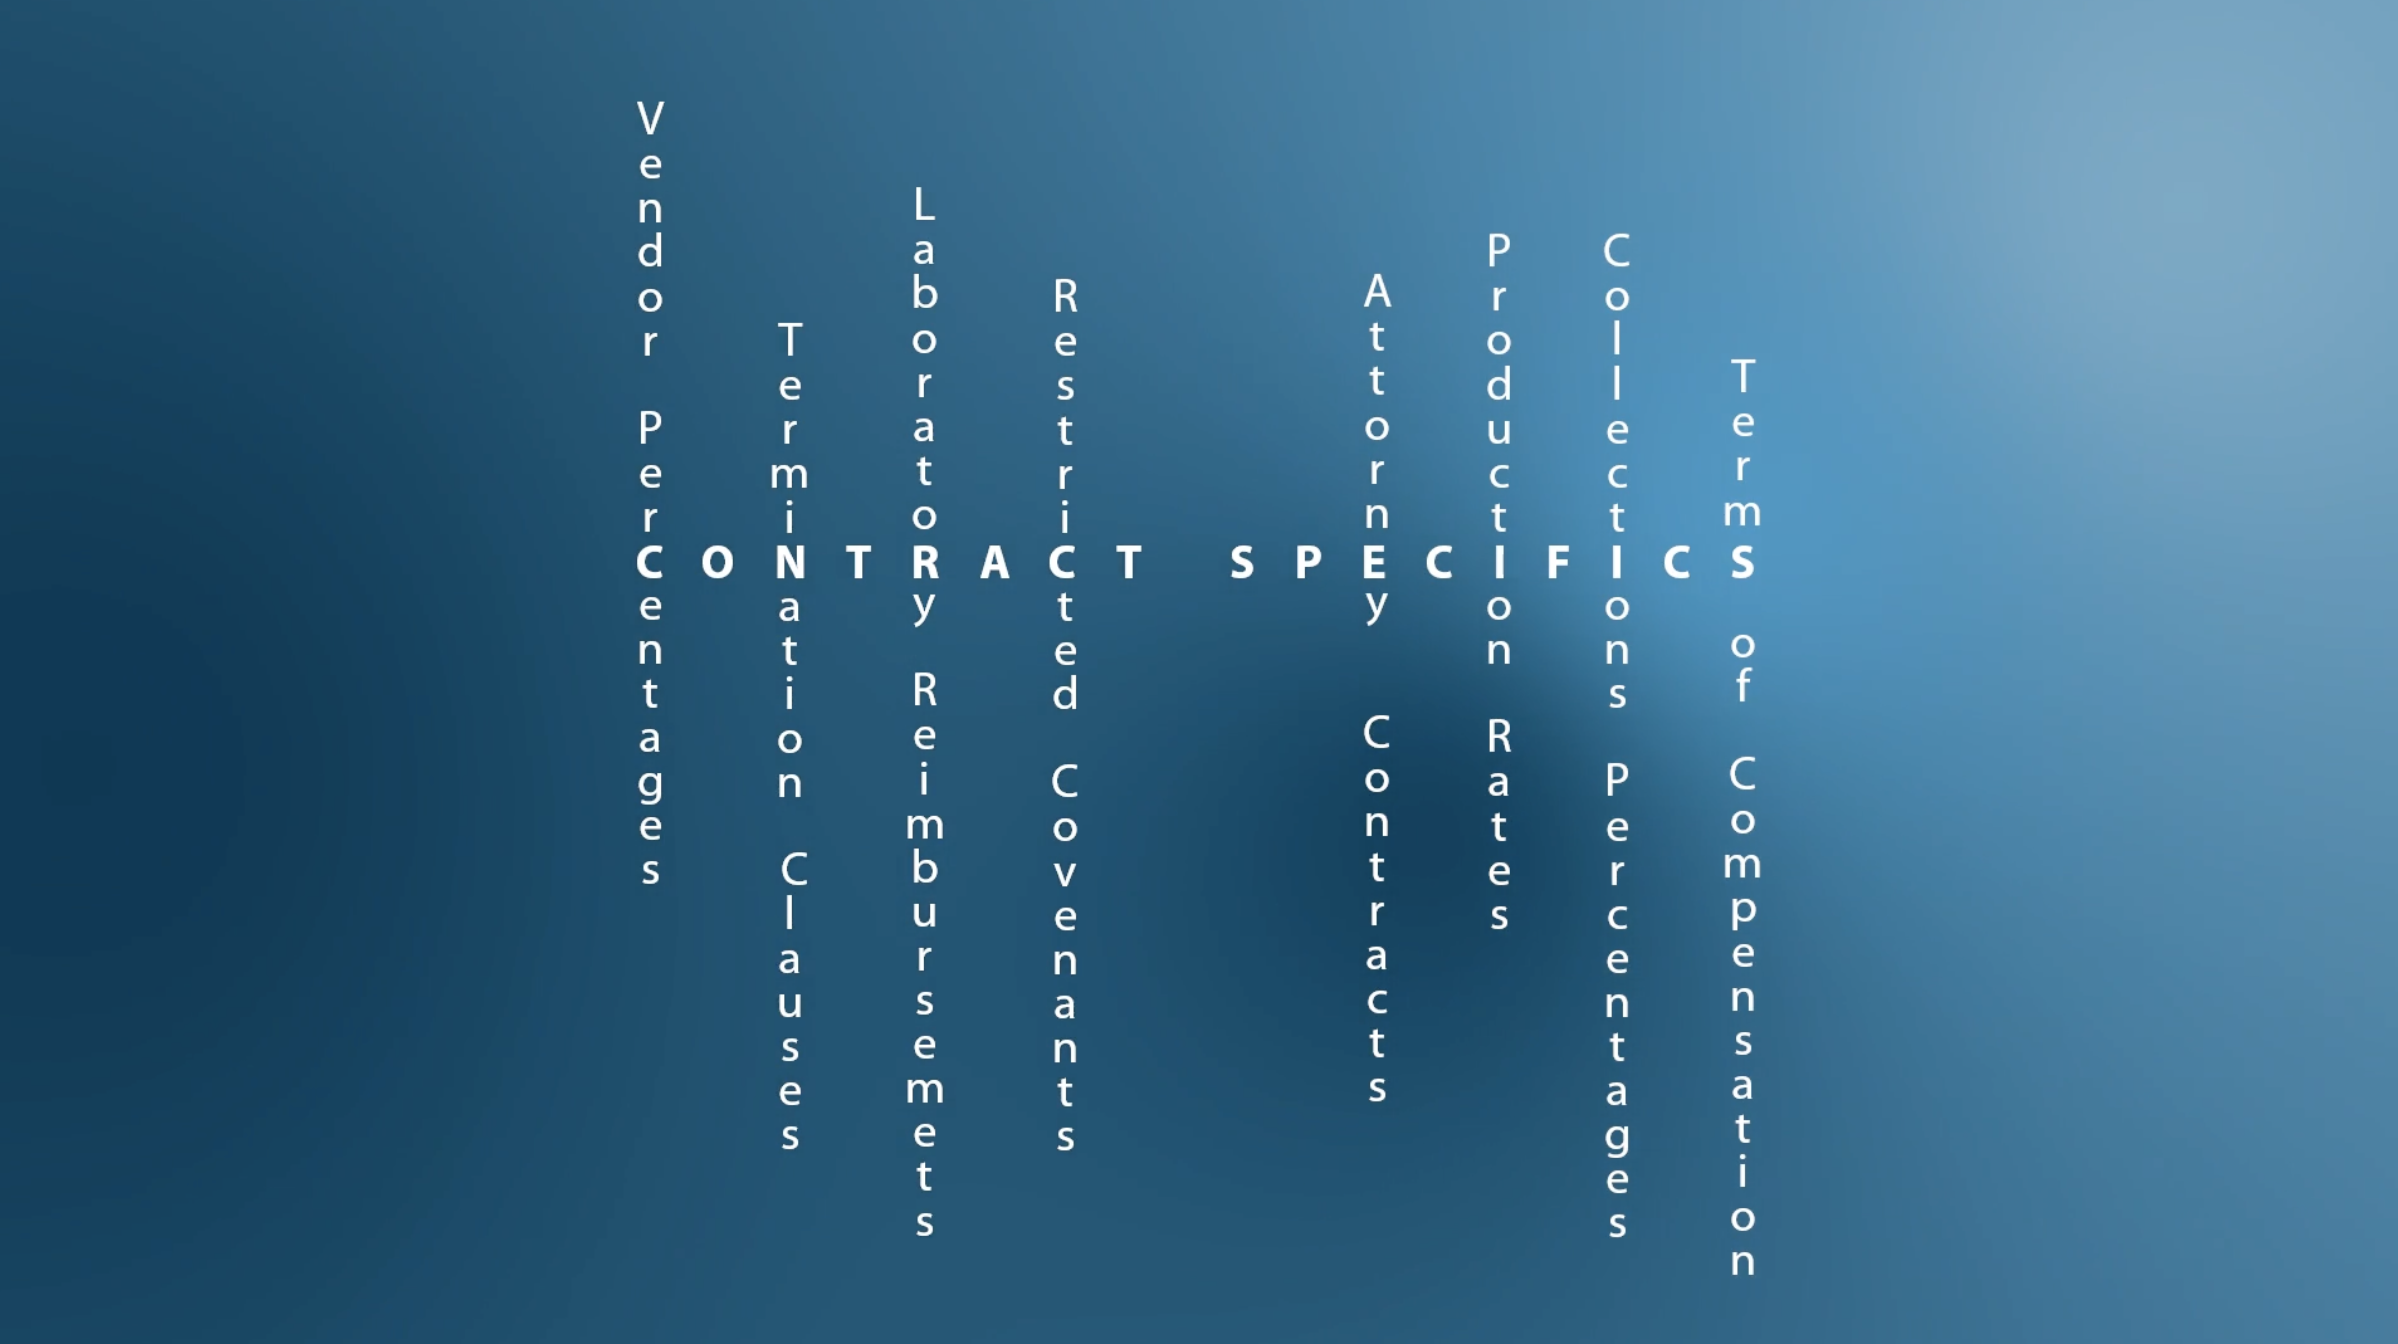 A matrix-like list on a blue background